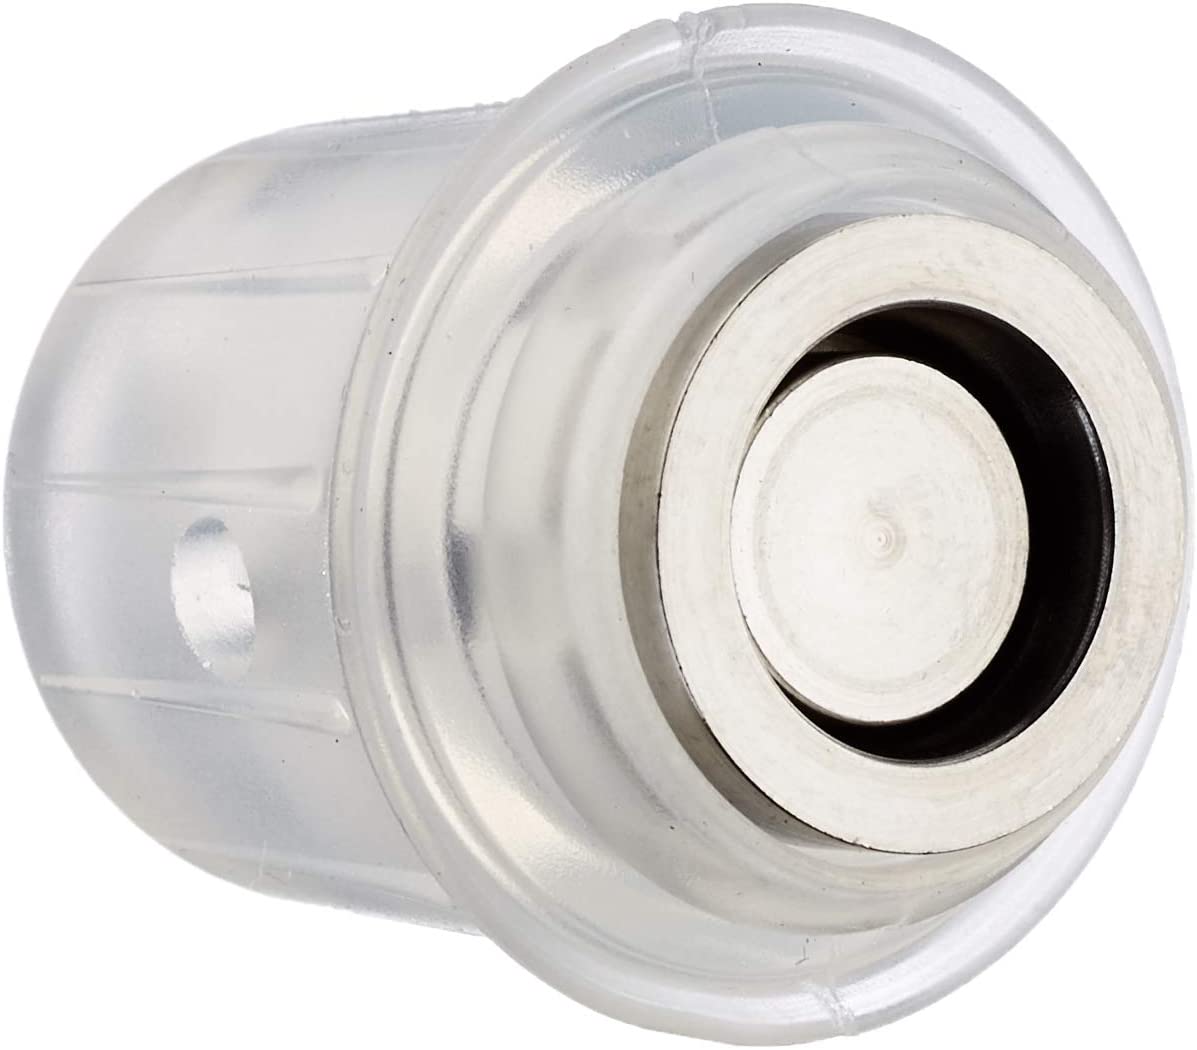 Silit Sicomatic t-plus/classic plastic work valve pressure cooker